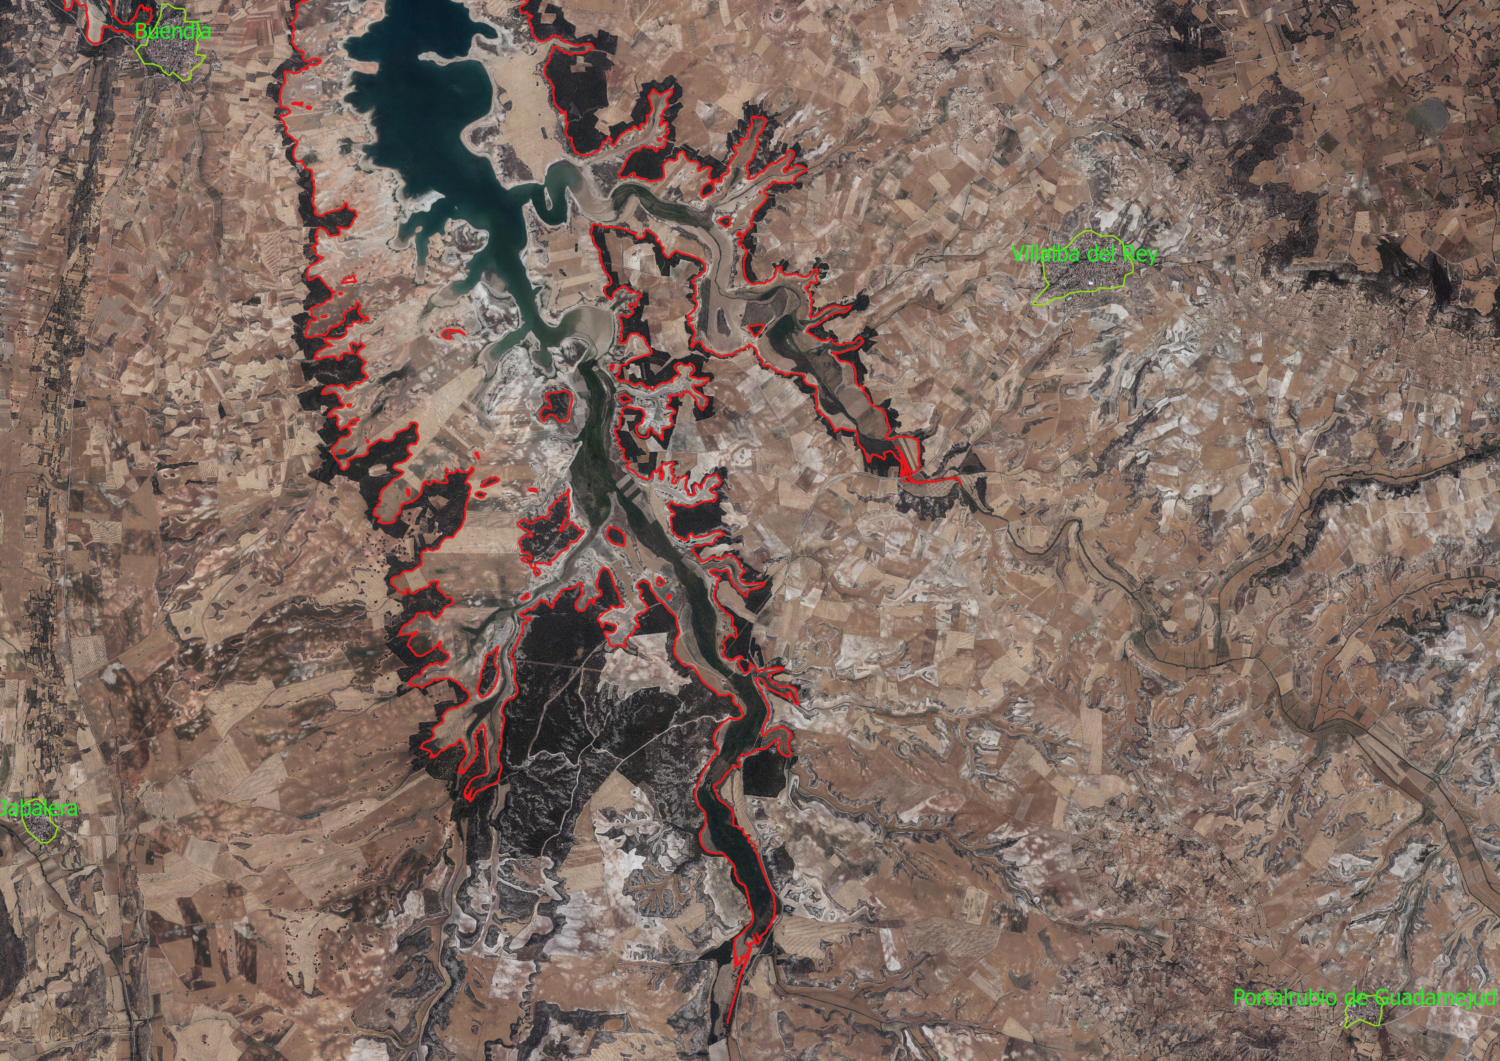 Vista aérea de la cola del embalse de Buendía correspondiente a los ríos Mayor y Guadamejud. En rojo, marcado el máximo nivel normal de embalse. Elaborado a partir de la ortofoto del PNOA, editada en primavera de 2016, facilitada por el IGN.